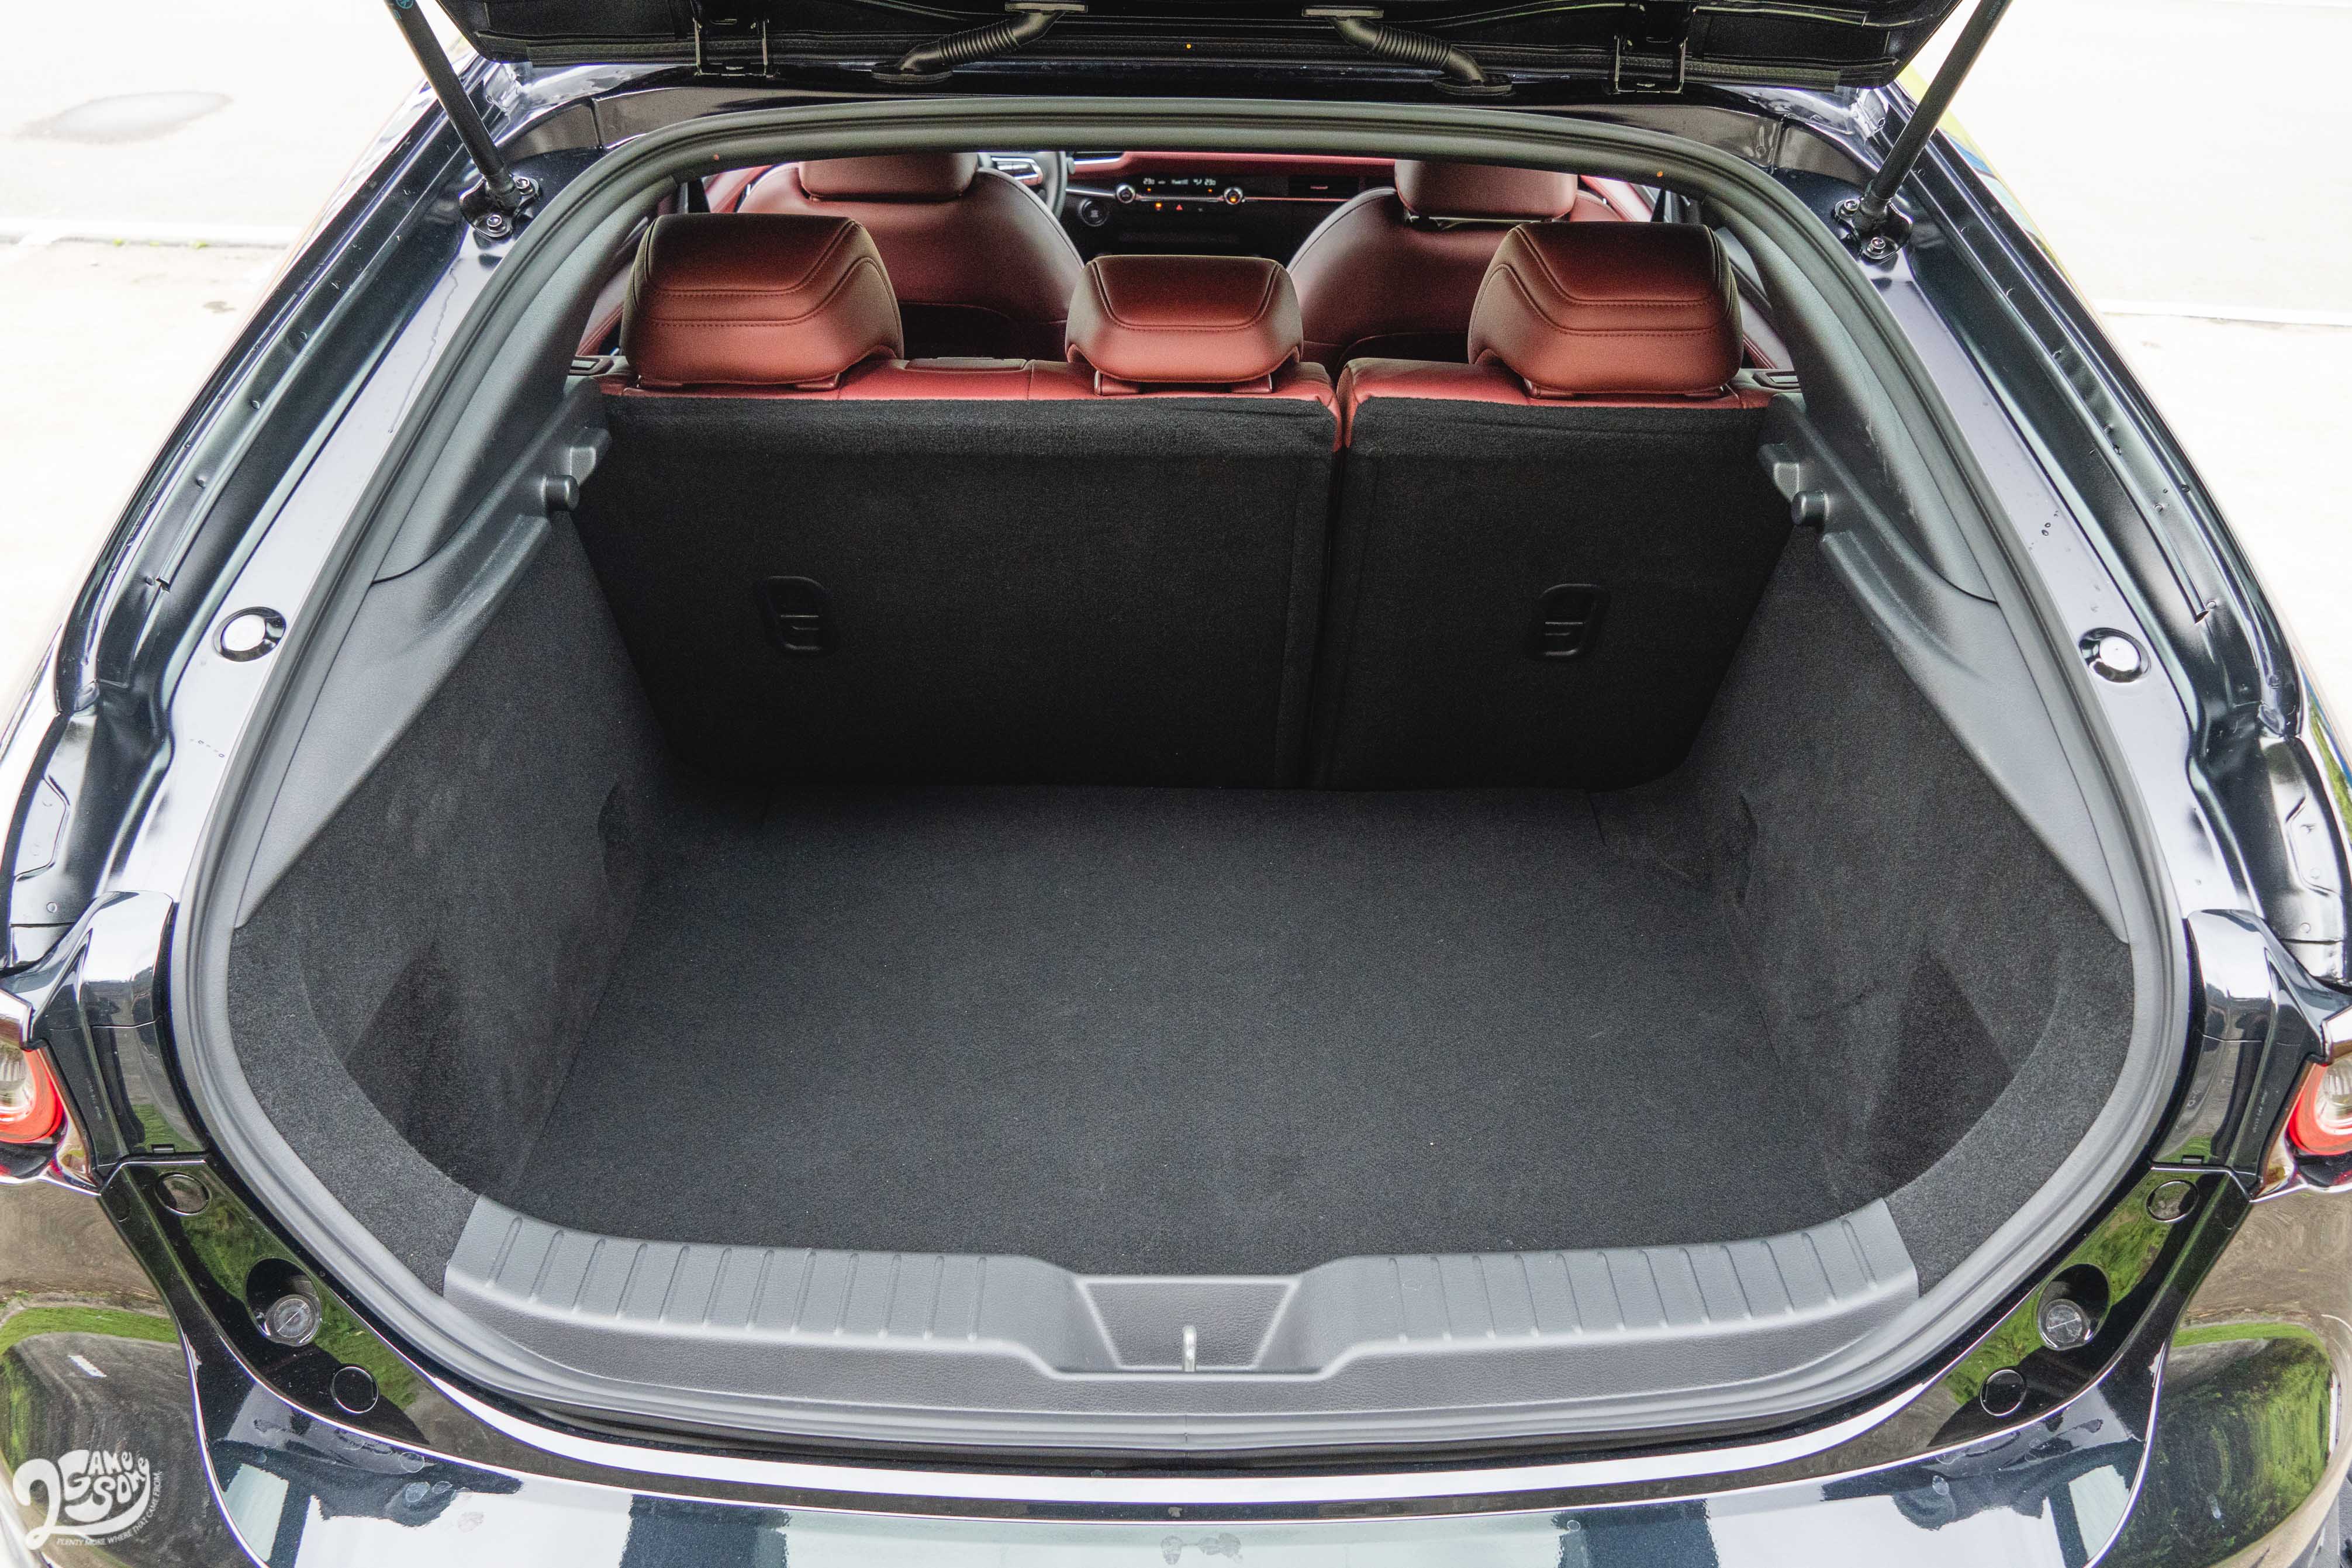 Mazda 5D 行李廂容積 327 公升。